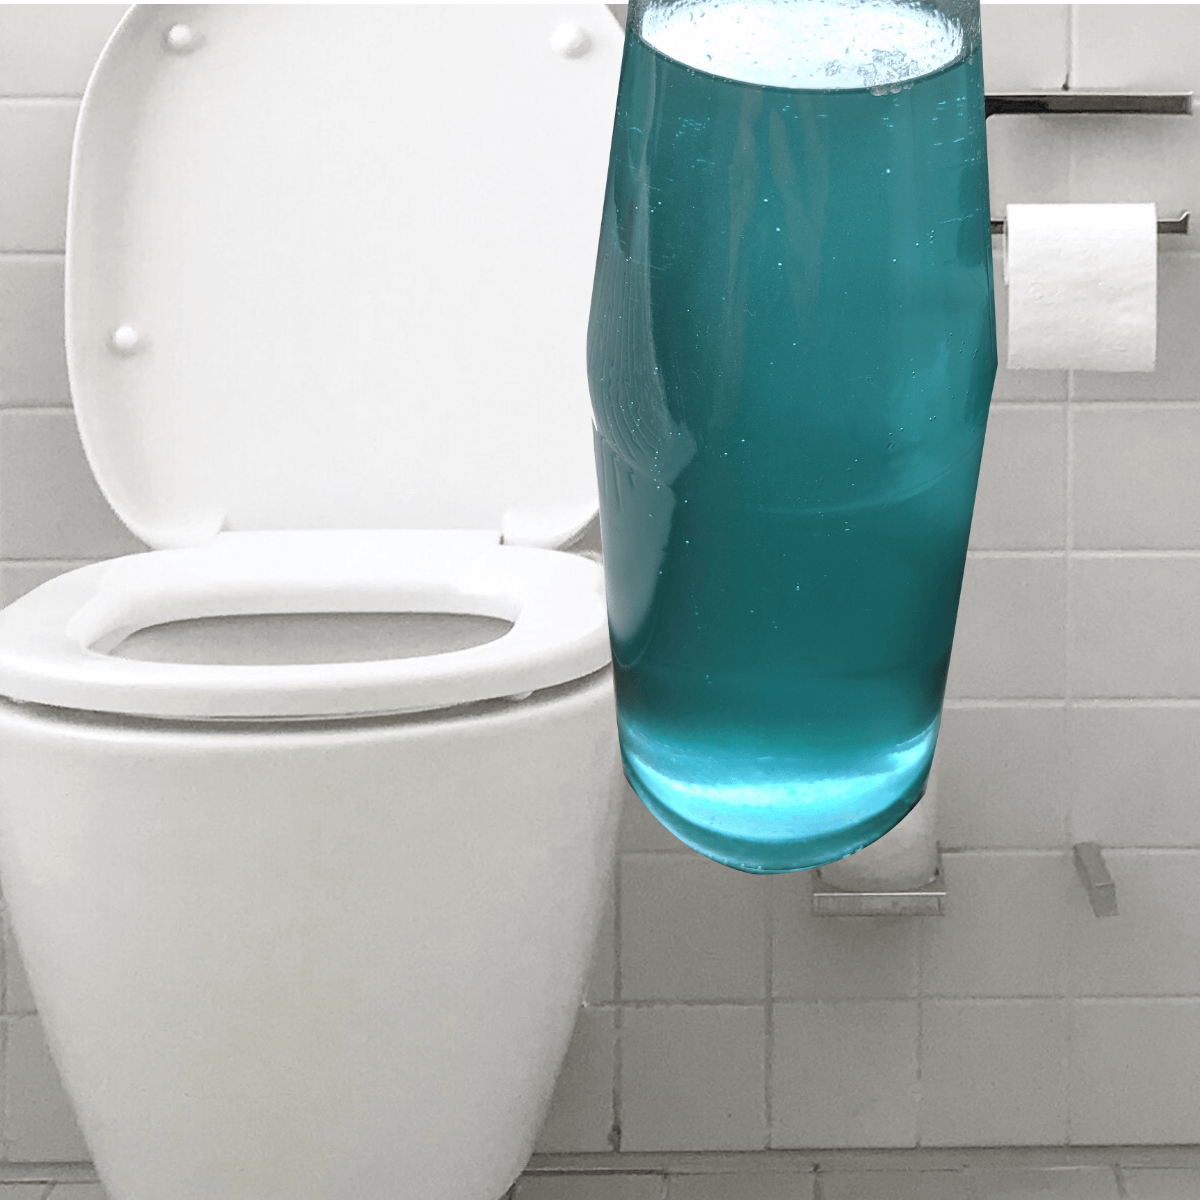 Faut-il nettoyer ses WC avec de l'eau de javel ?